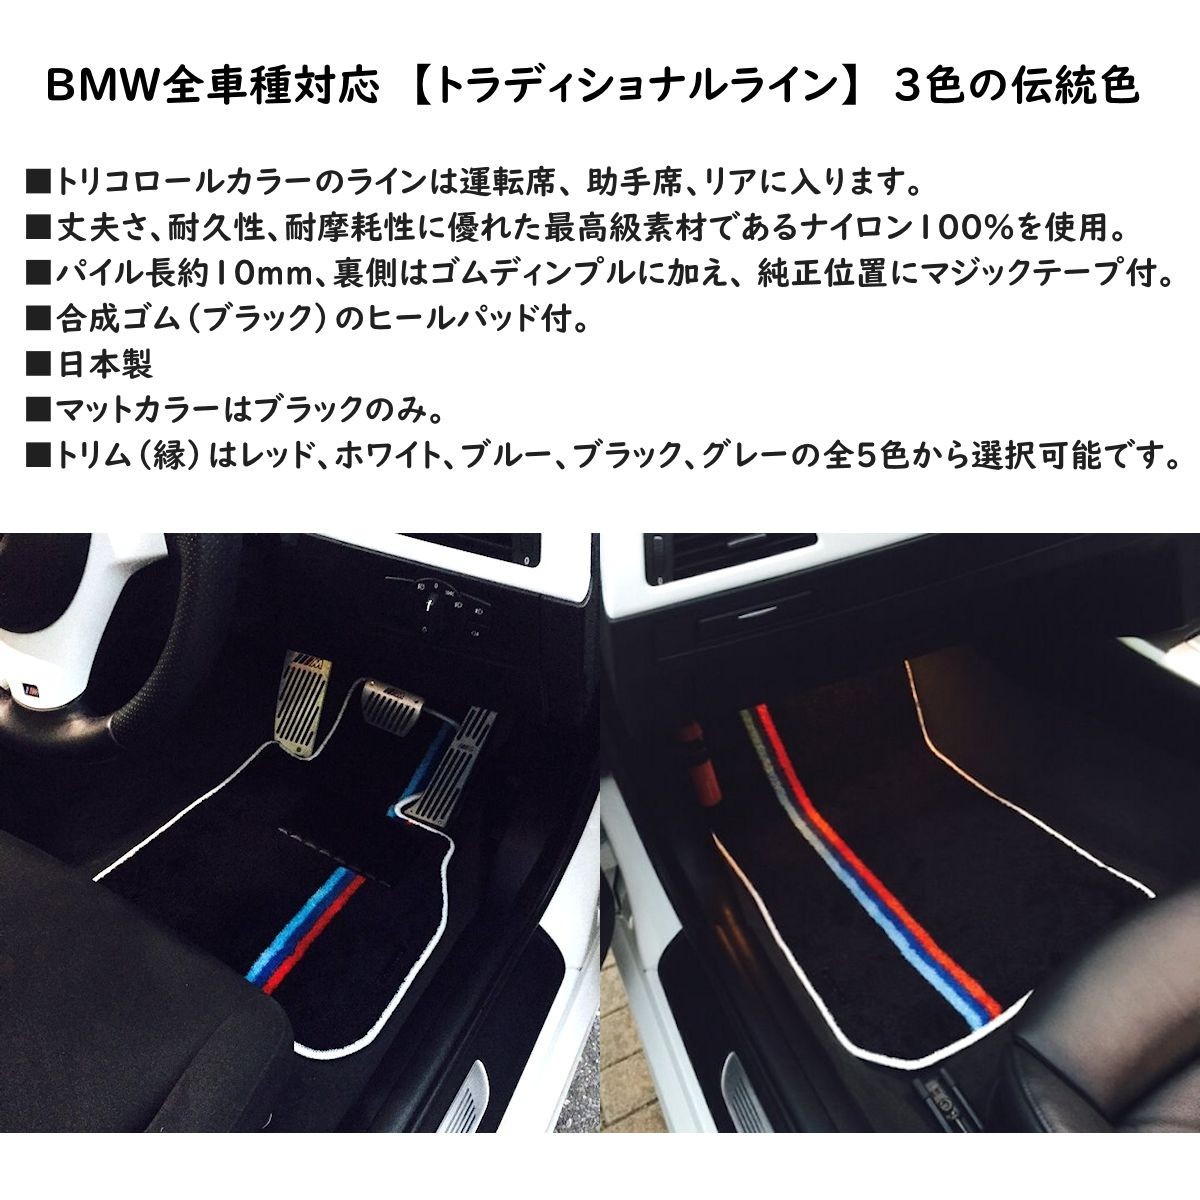 BMW 5 серии седан touring E39 специальные коврики Precious ef выполненный под заказ сделано в Японии производство на заказ 2 листов /4 шт. комплект 